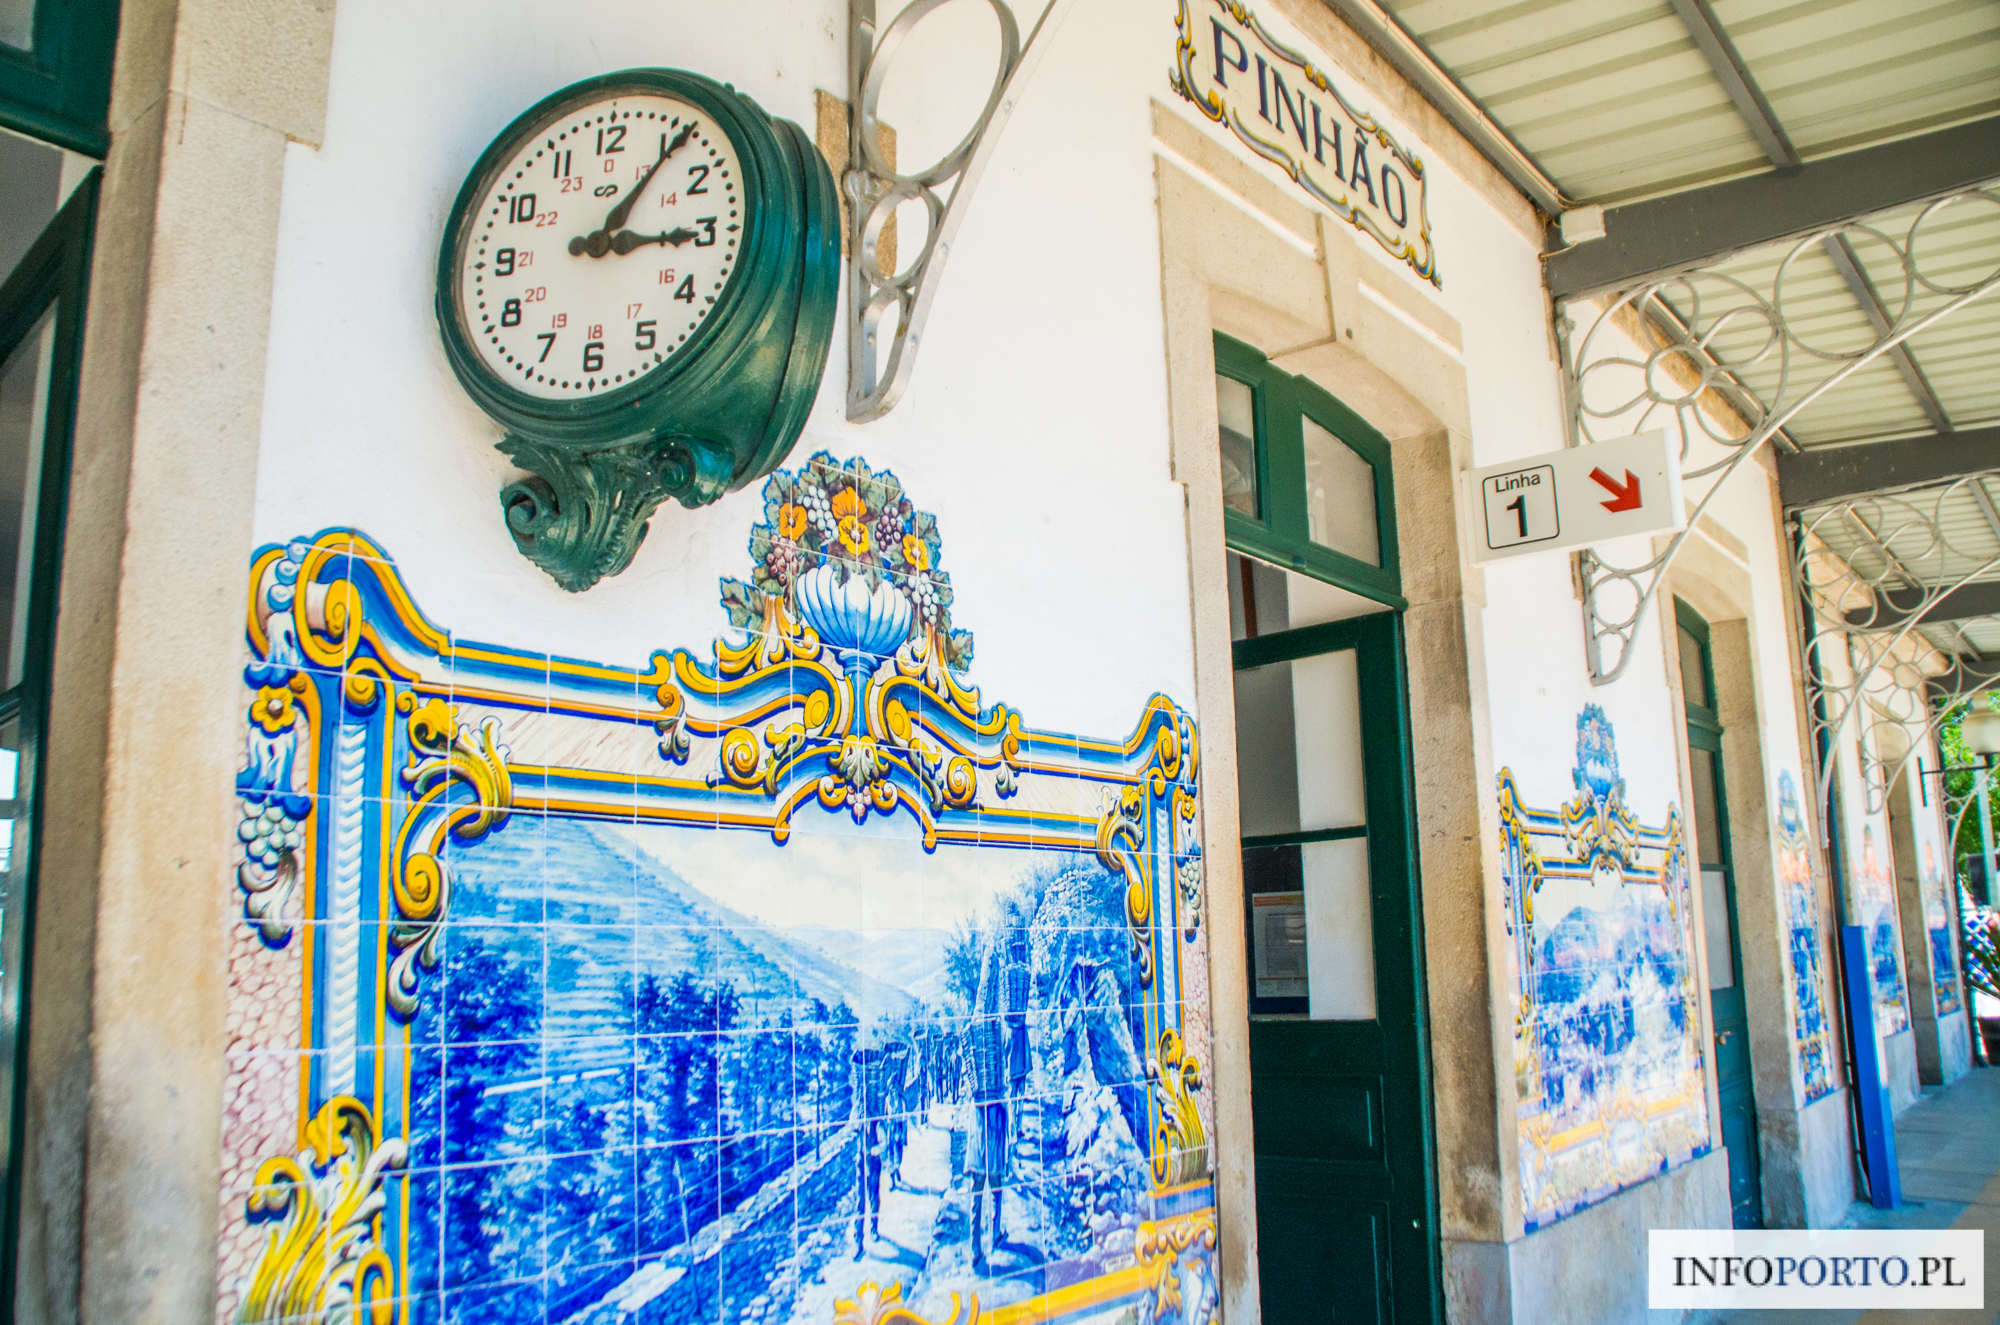 Dolina Douro Portugalia zwiedzanie przewodnik dolina rzeki Douro Duero opis co warto zobaczyć ciekawe miejsca samochodem pociągiem rejs informacje praktyczne